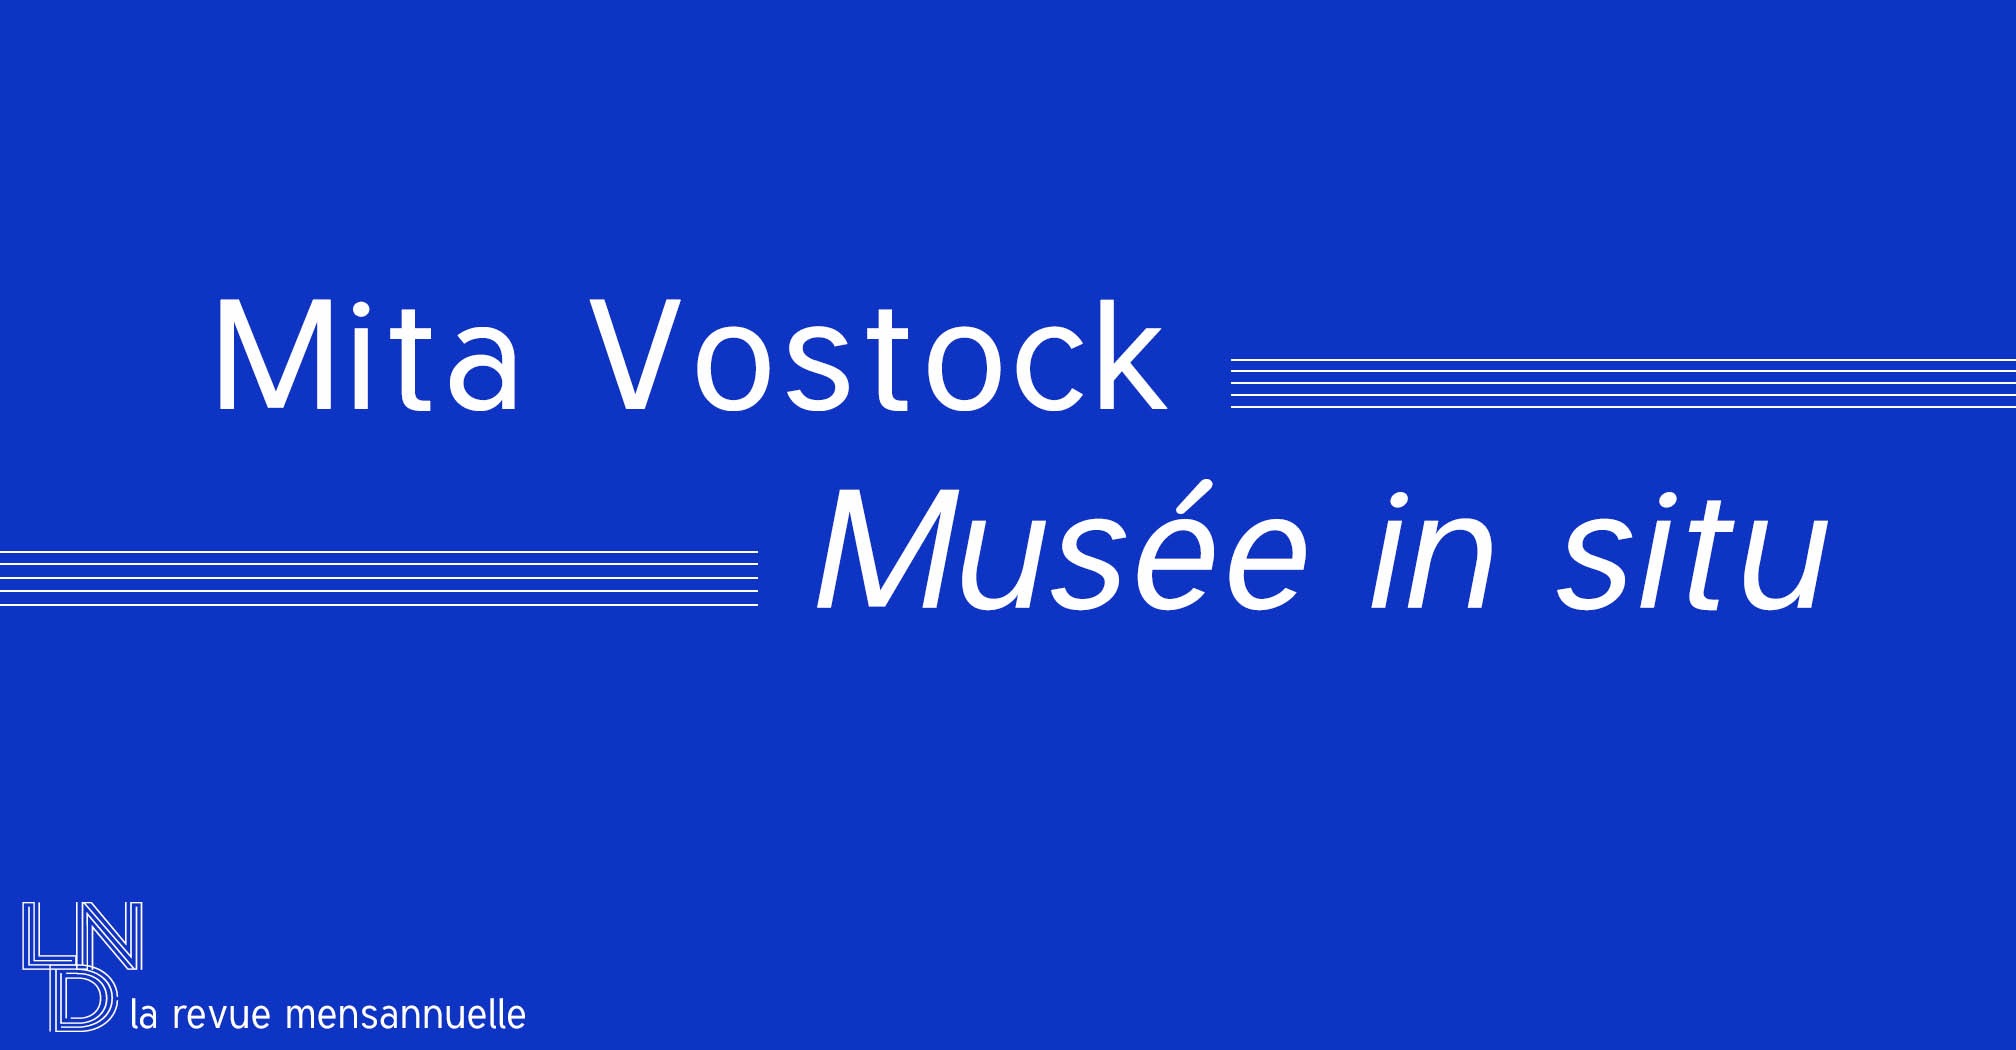 Musée in situ - Mita Vostock